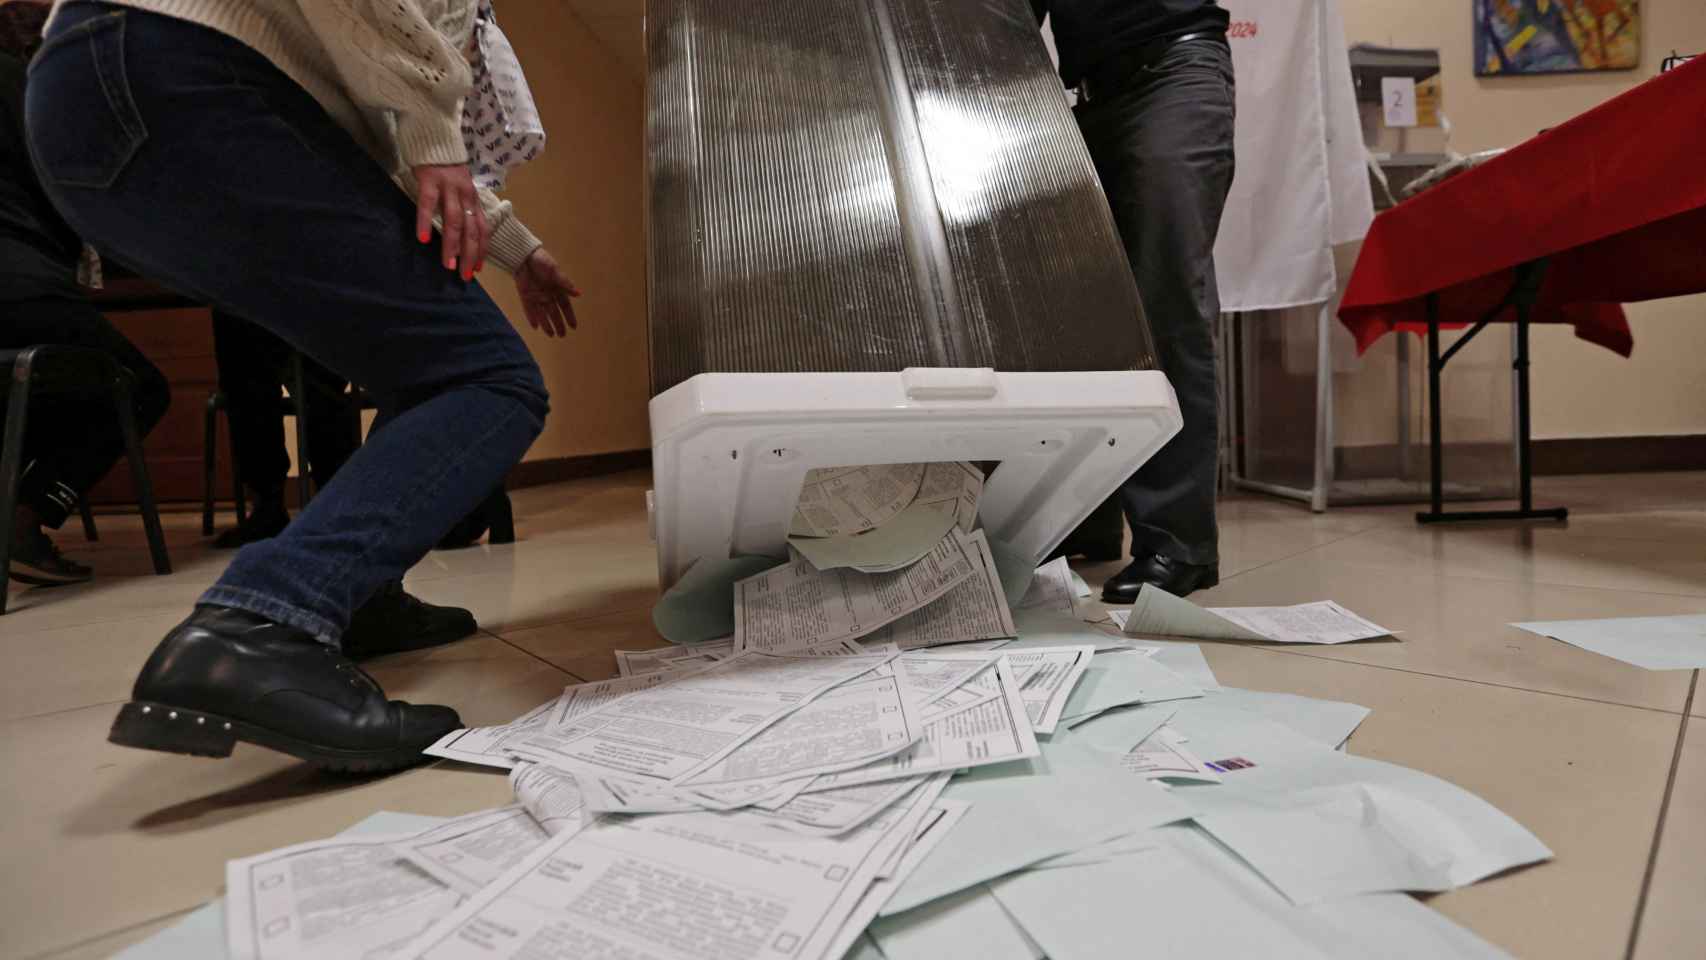 Los miembros de una comisión electoral vacían una urna antes de contar los votos, en la ciudad de Vladivostok.